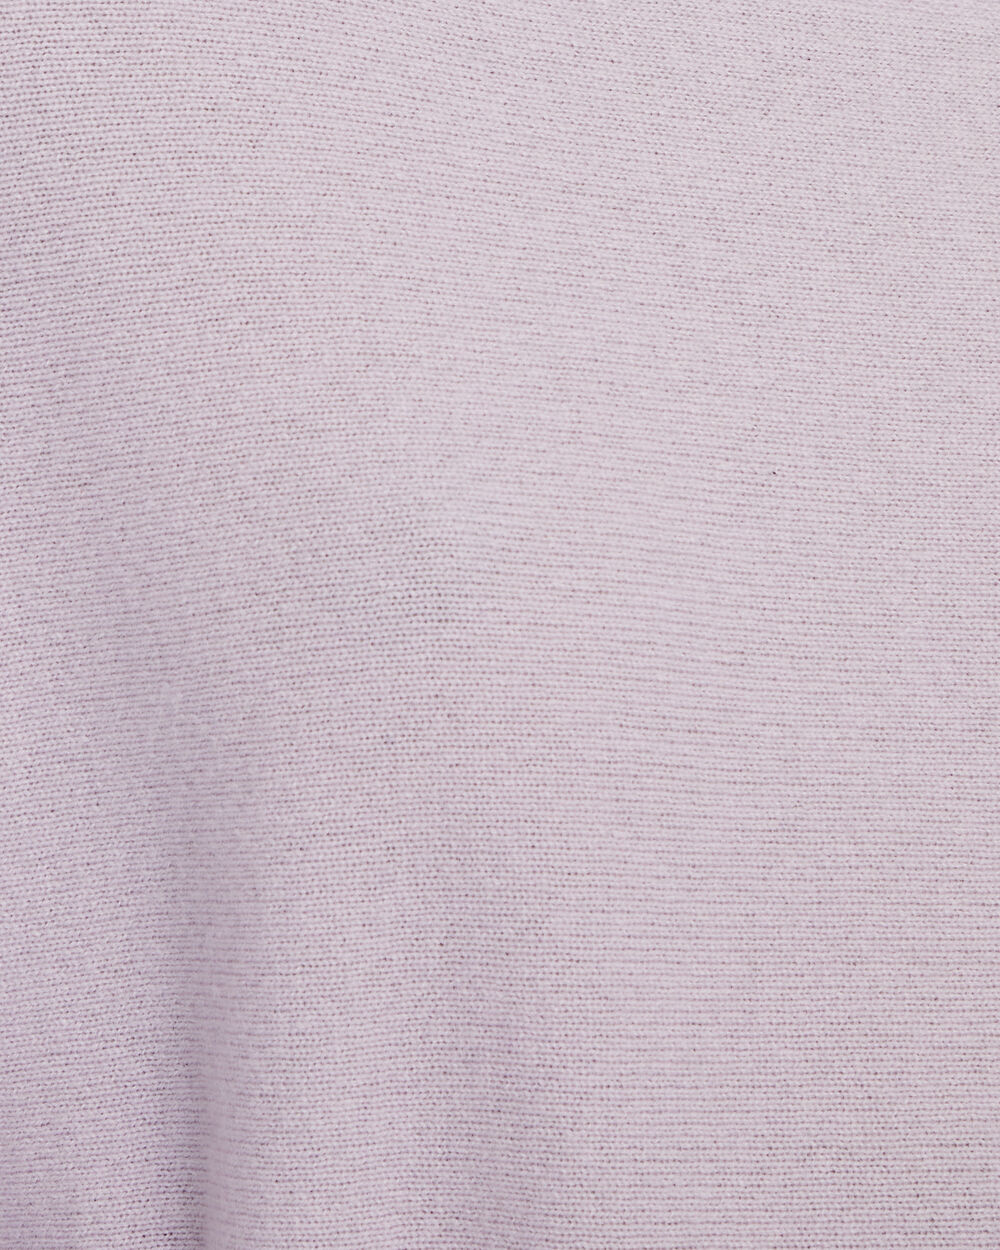 INTERMIX Private Label Reese Cashmere Sweater In Purple | INTERMIX®